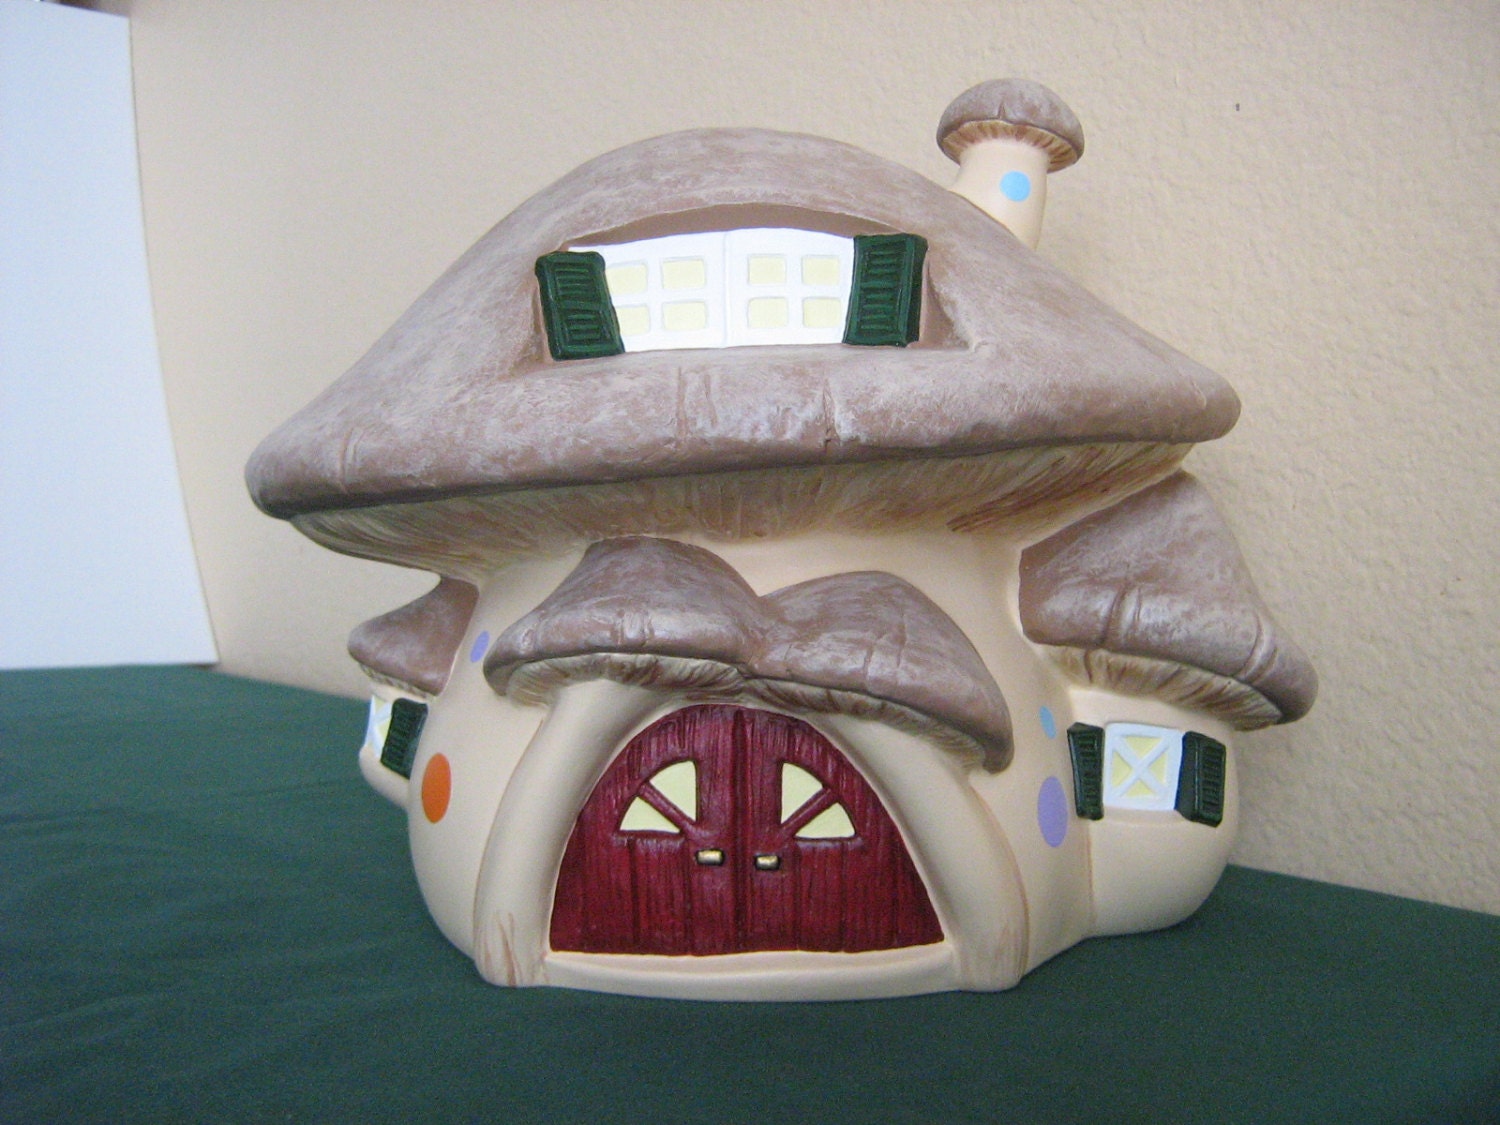  Ceramic Mushroom House 